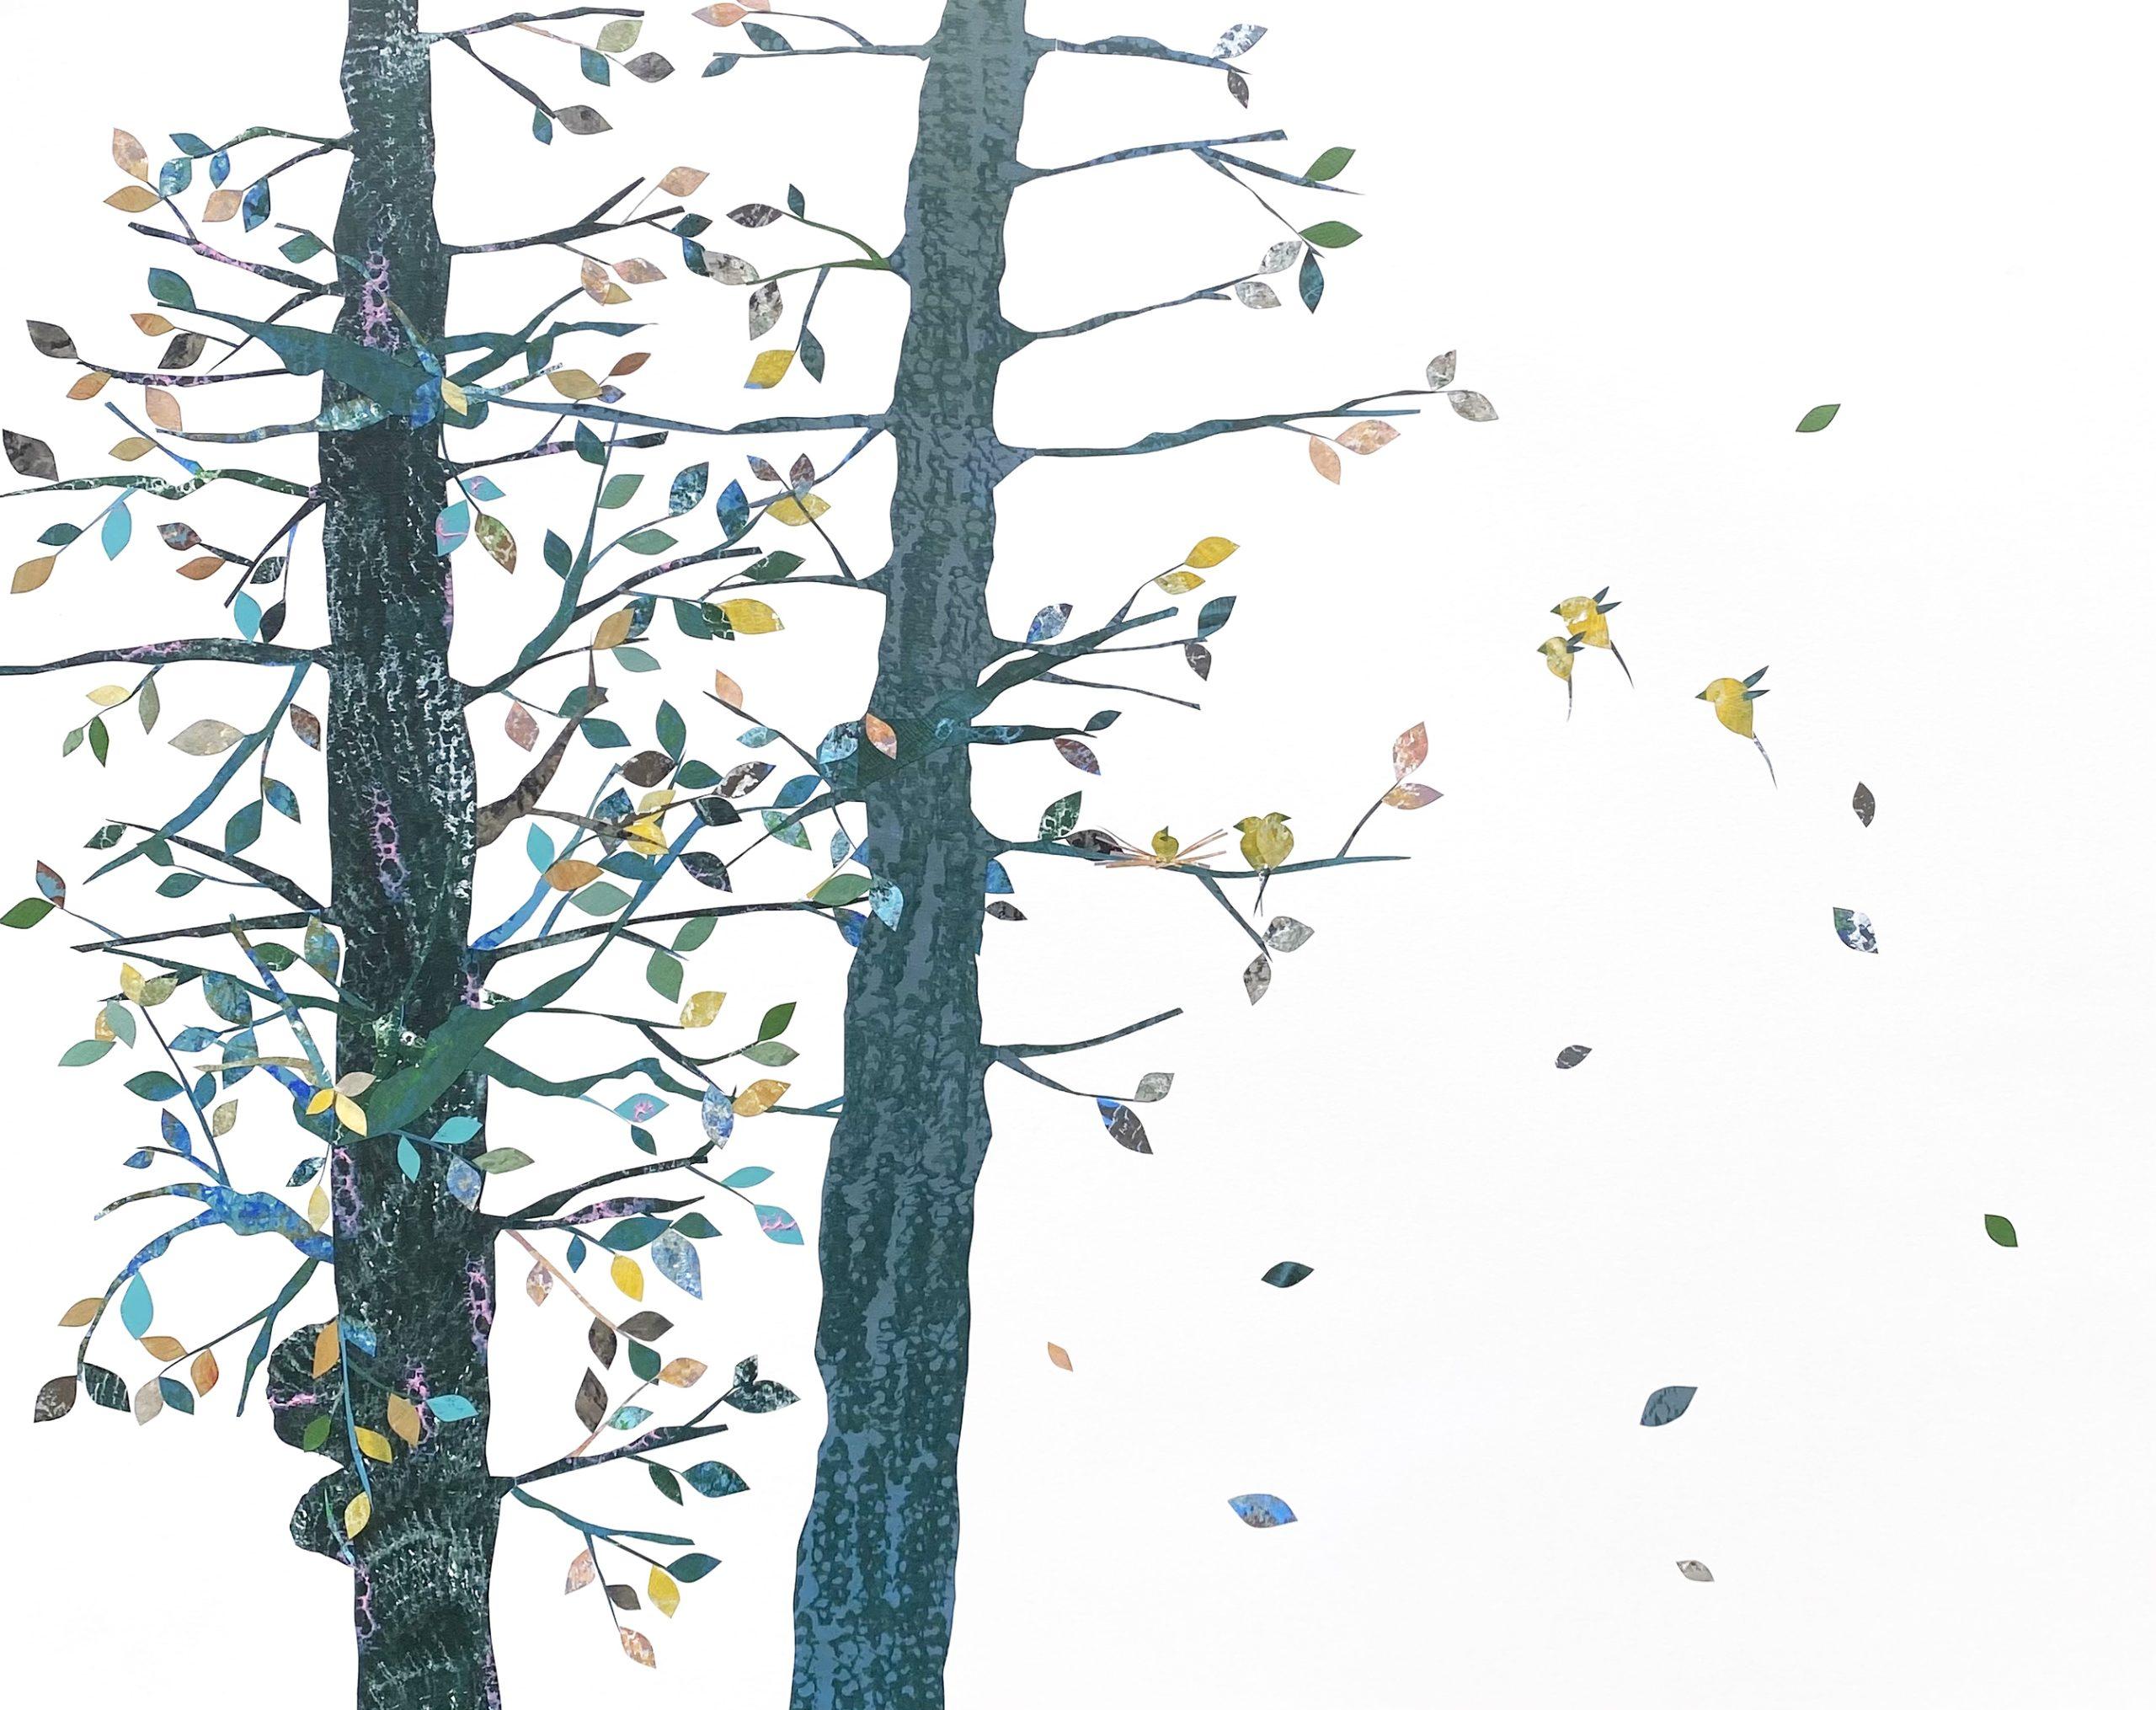 Fledglings (Collage, Oiseaux, Paysage, arbres, Sarcelle, Bleu, Vert)